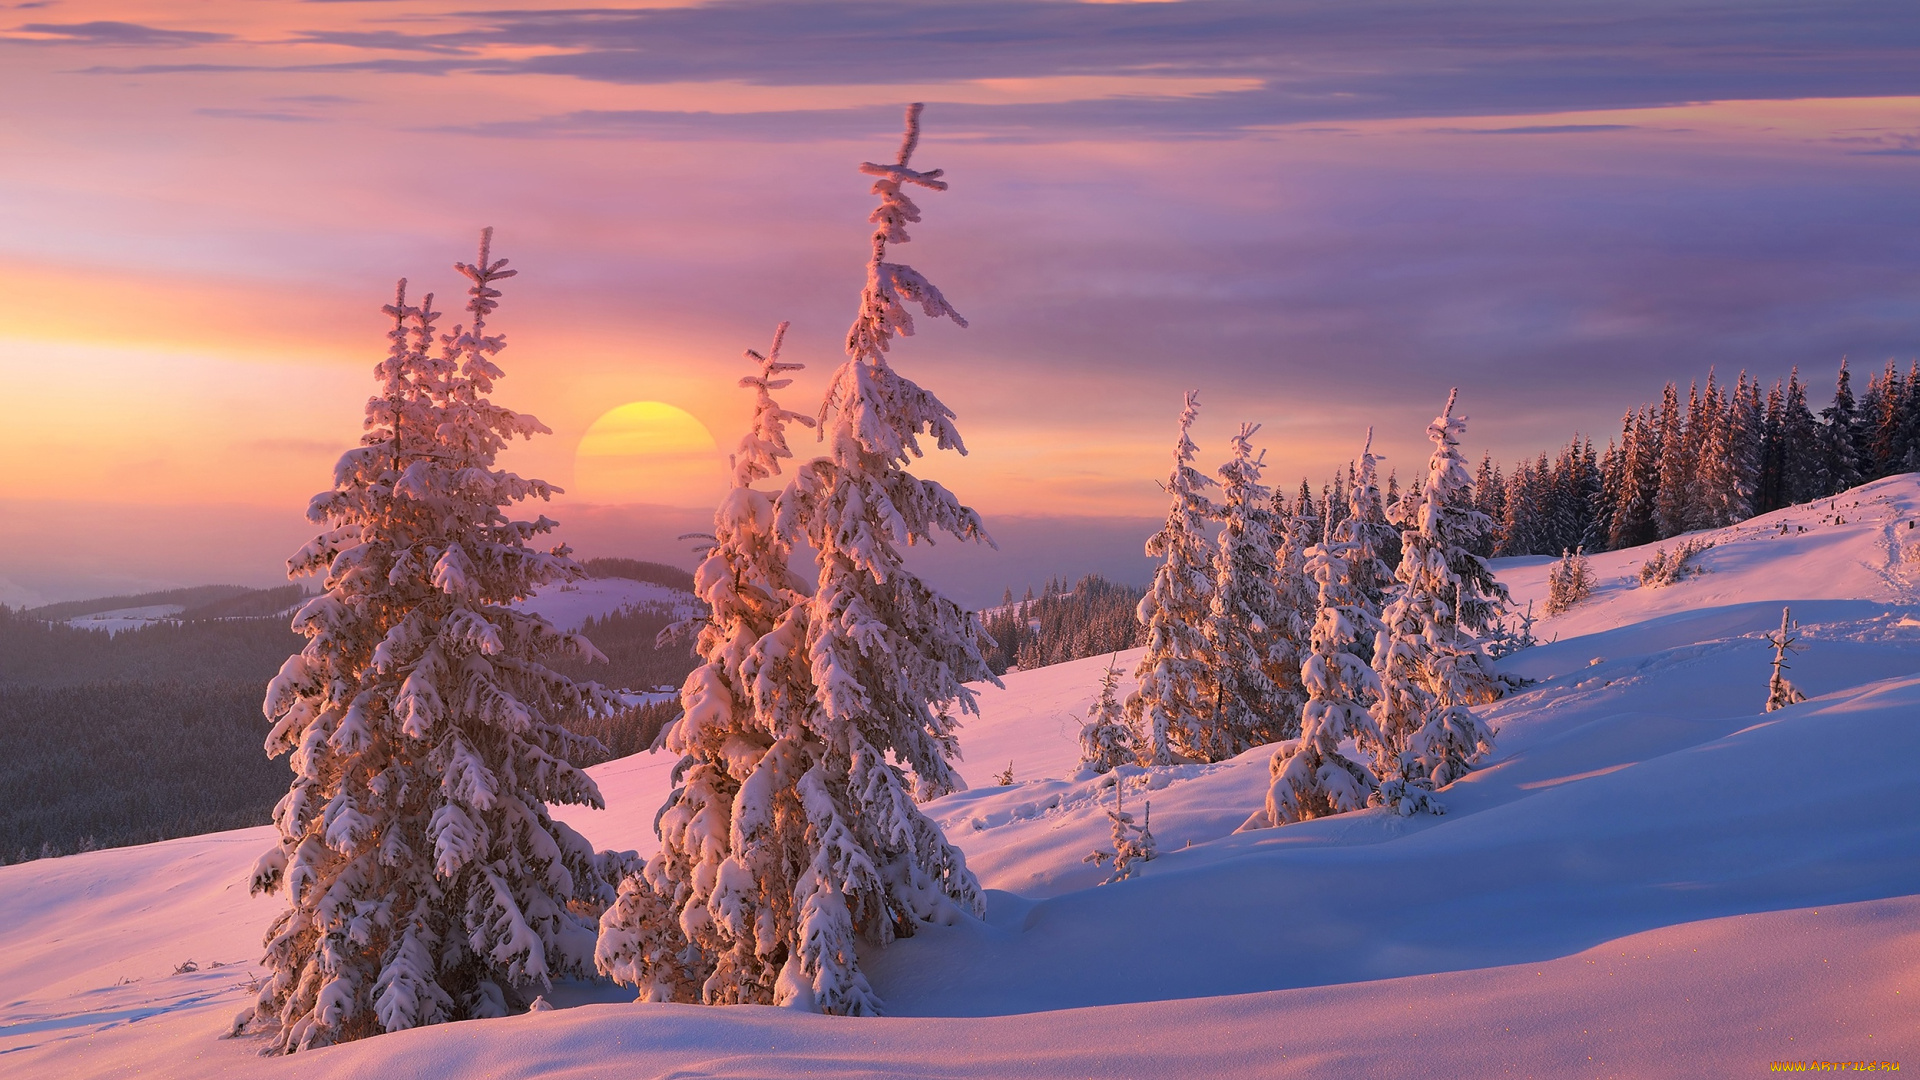 природа, зима, ёлки, ёлочки, сказочно, тени, мороз, склон, снег, ели, вечер, красота, холмы, горы, облака, солнце, закат